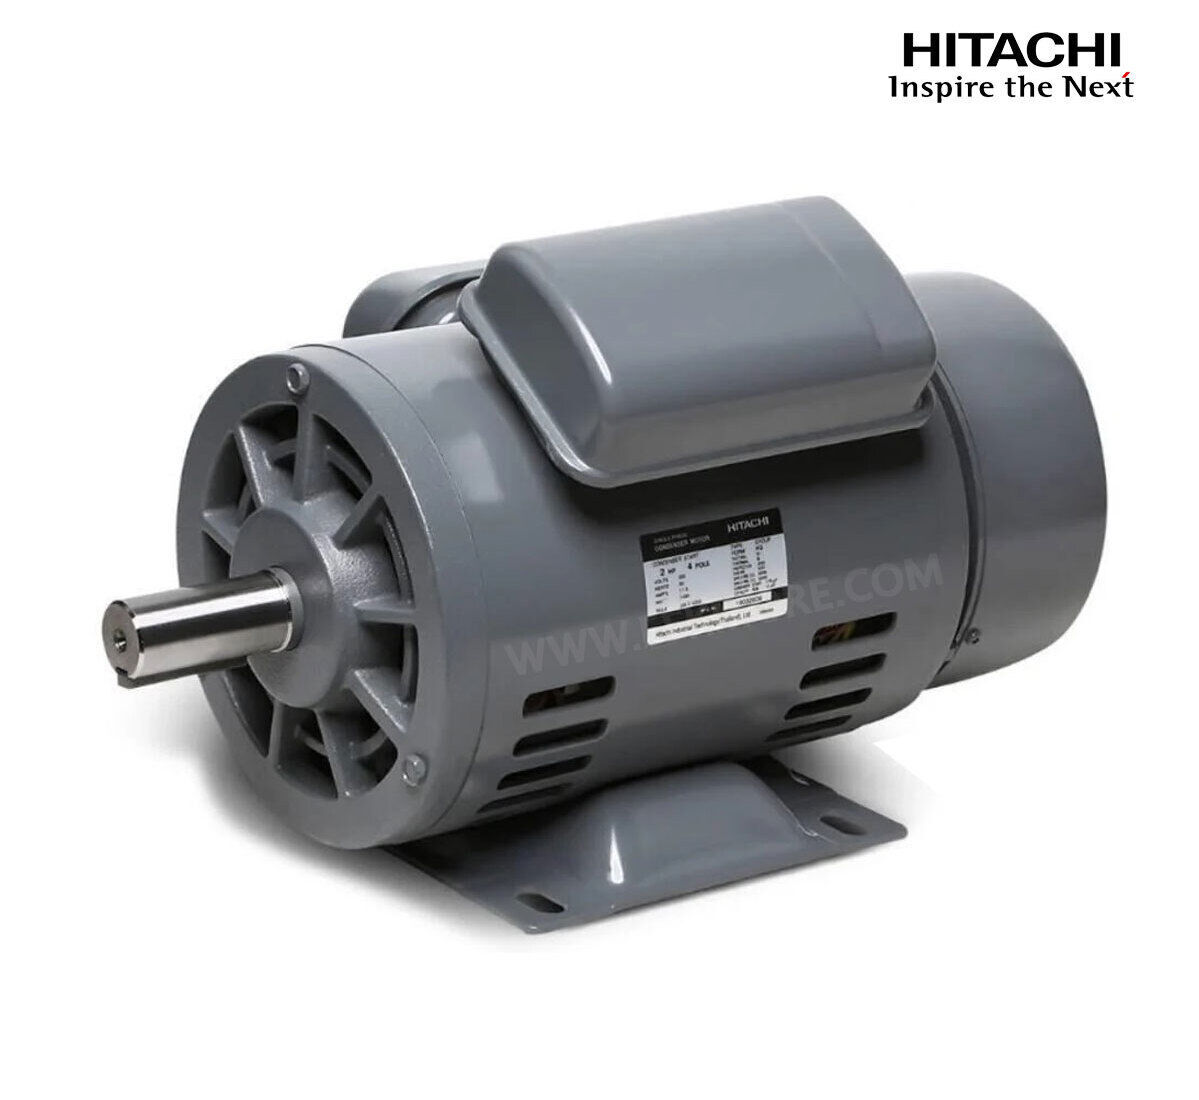 มอเตอร์ฮิตาชิของแท้ 100% HITACHI รุ่น EFOUP-KQ กำลัง 2 แรงม้า (1.5 KW.) กำลังไฟฟ้าที่ใช้ 220V ความเร็วรอบตัวเปล่า 1450 RPM แกนเพลามอเตอร์ 28 MM.รับประกัน 3 ปี มีของพร้อมจัดส่งทุกวัน